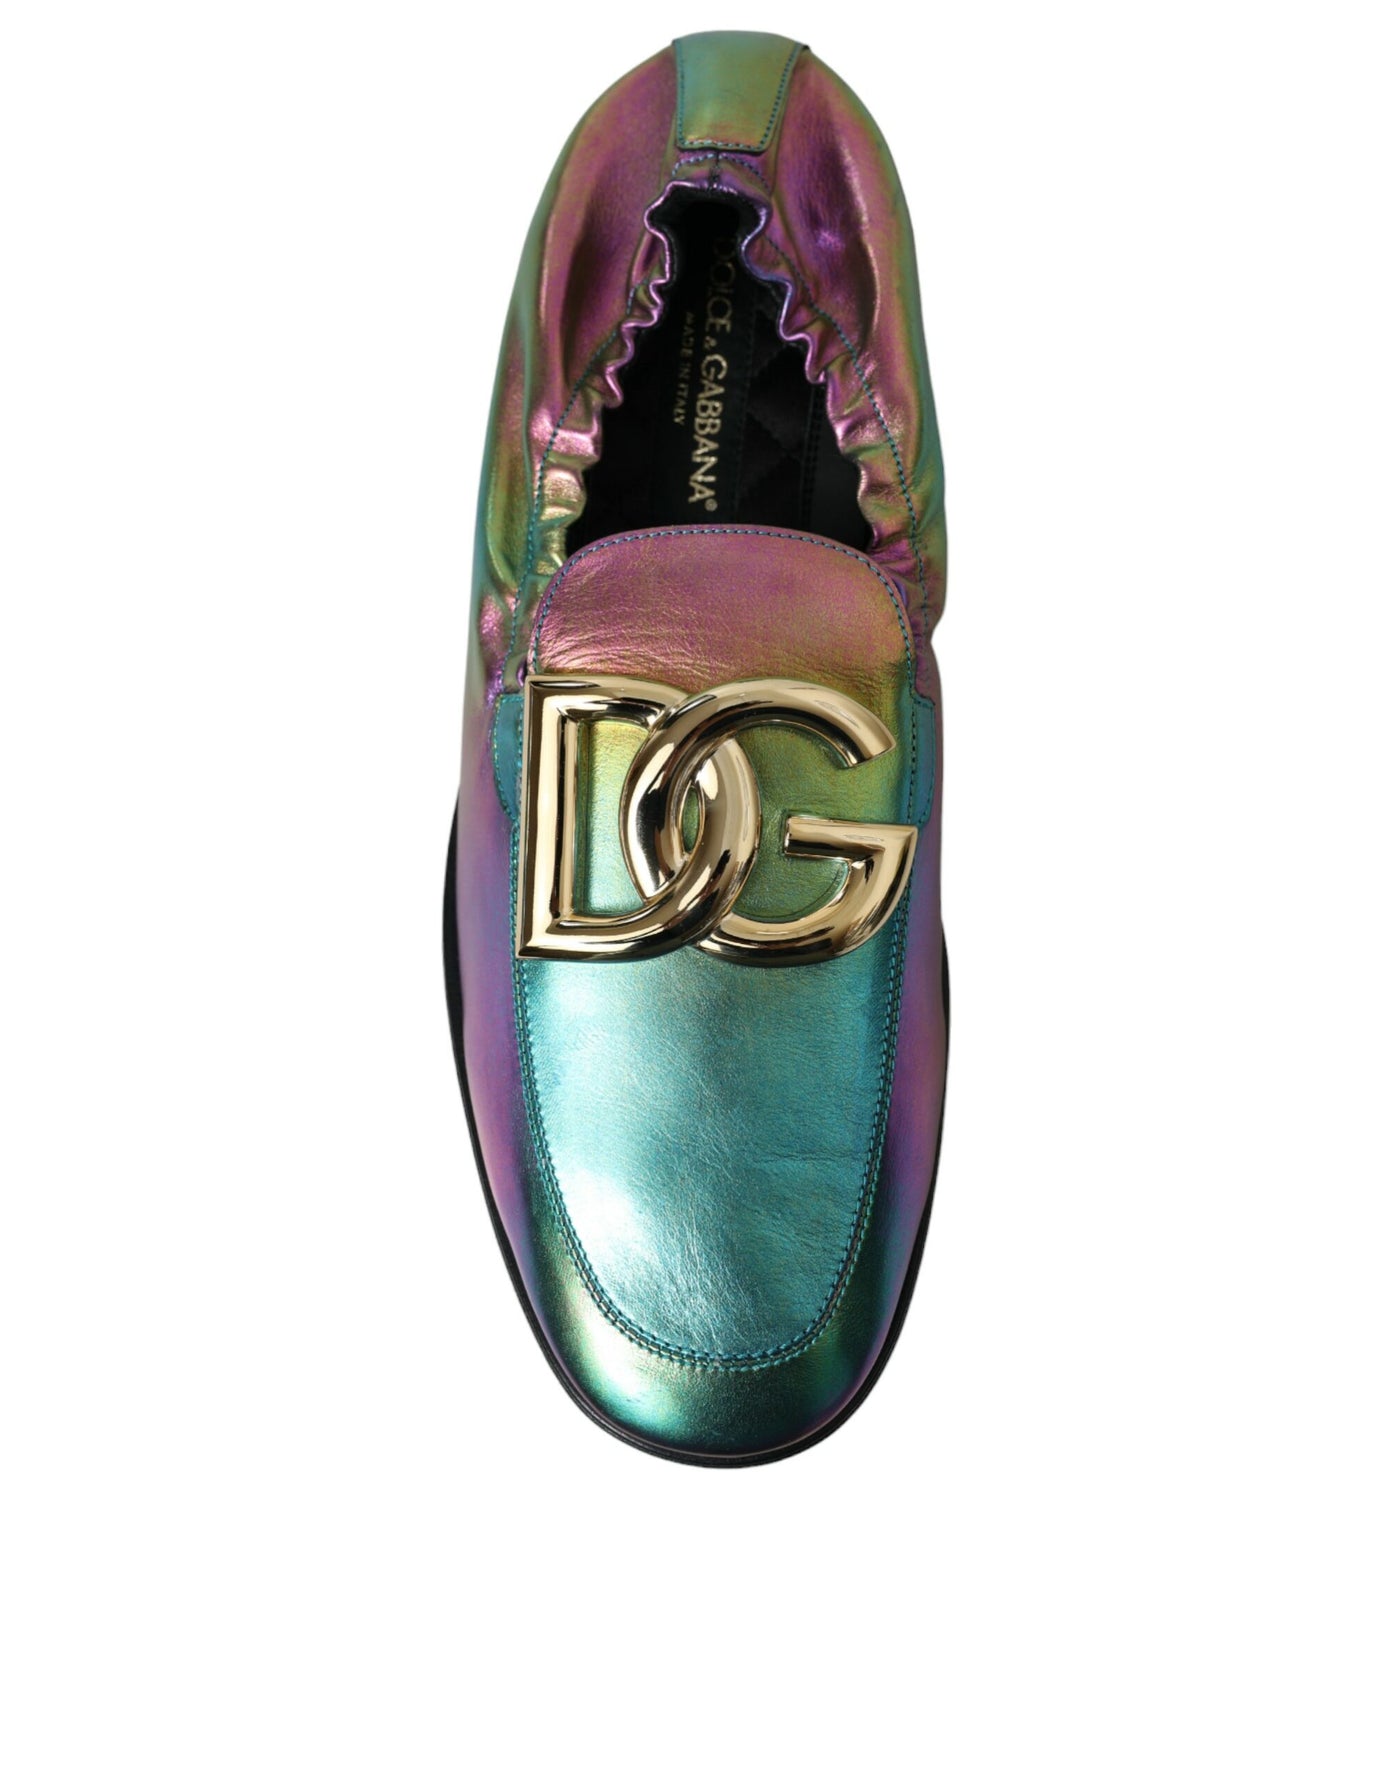 Dolce & Gabbana Multicolor Leather DG Logo Loafer Dress Shoes